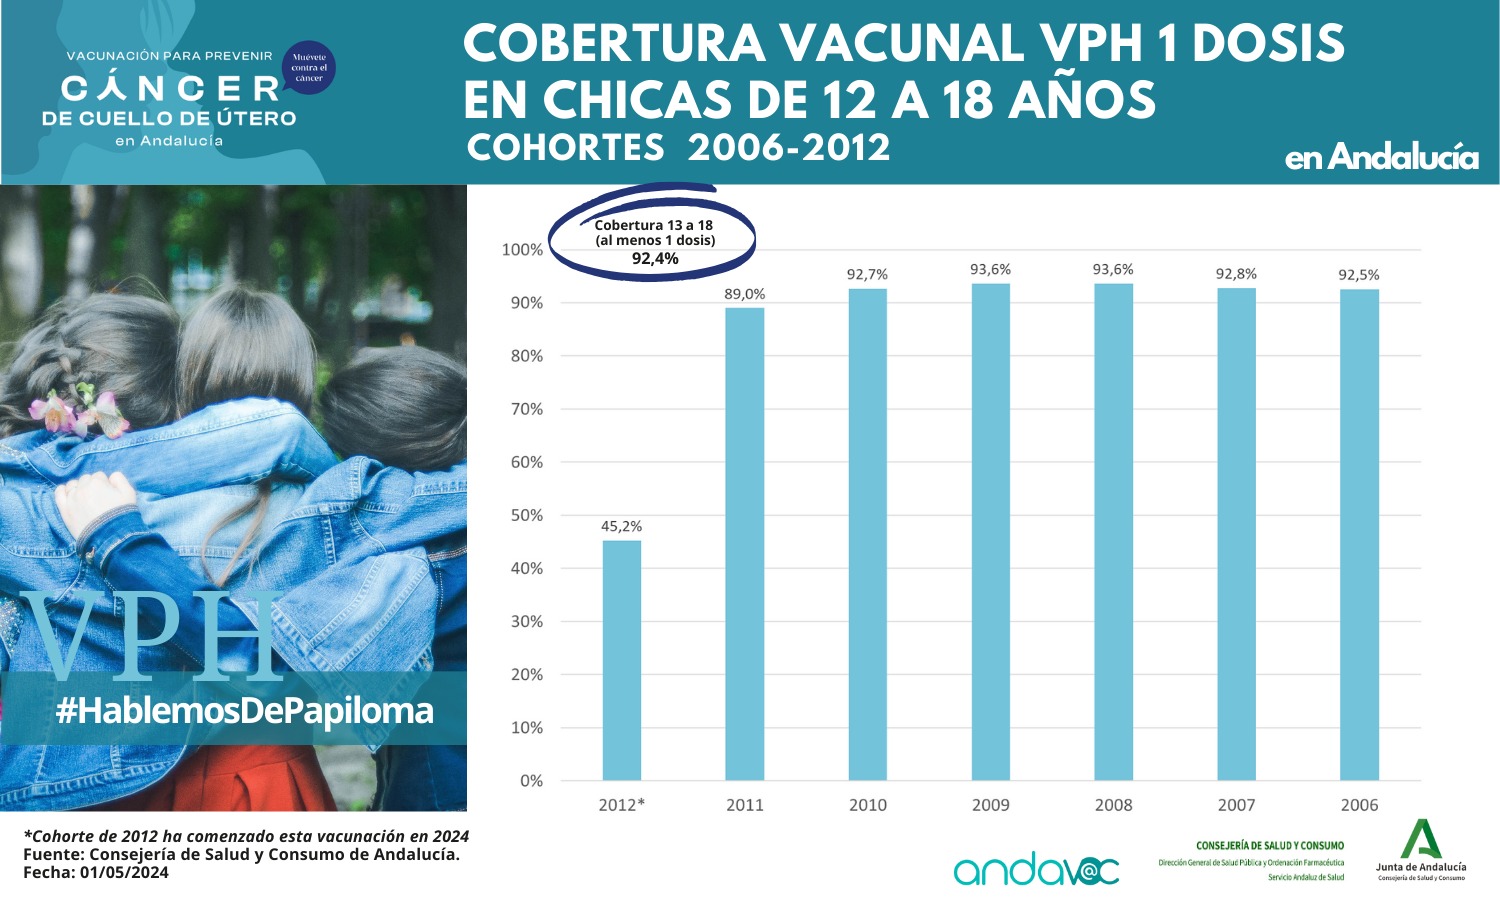 Cobertura vacunal VPH en chicas de 12 a 18 años en Andalucía